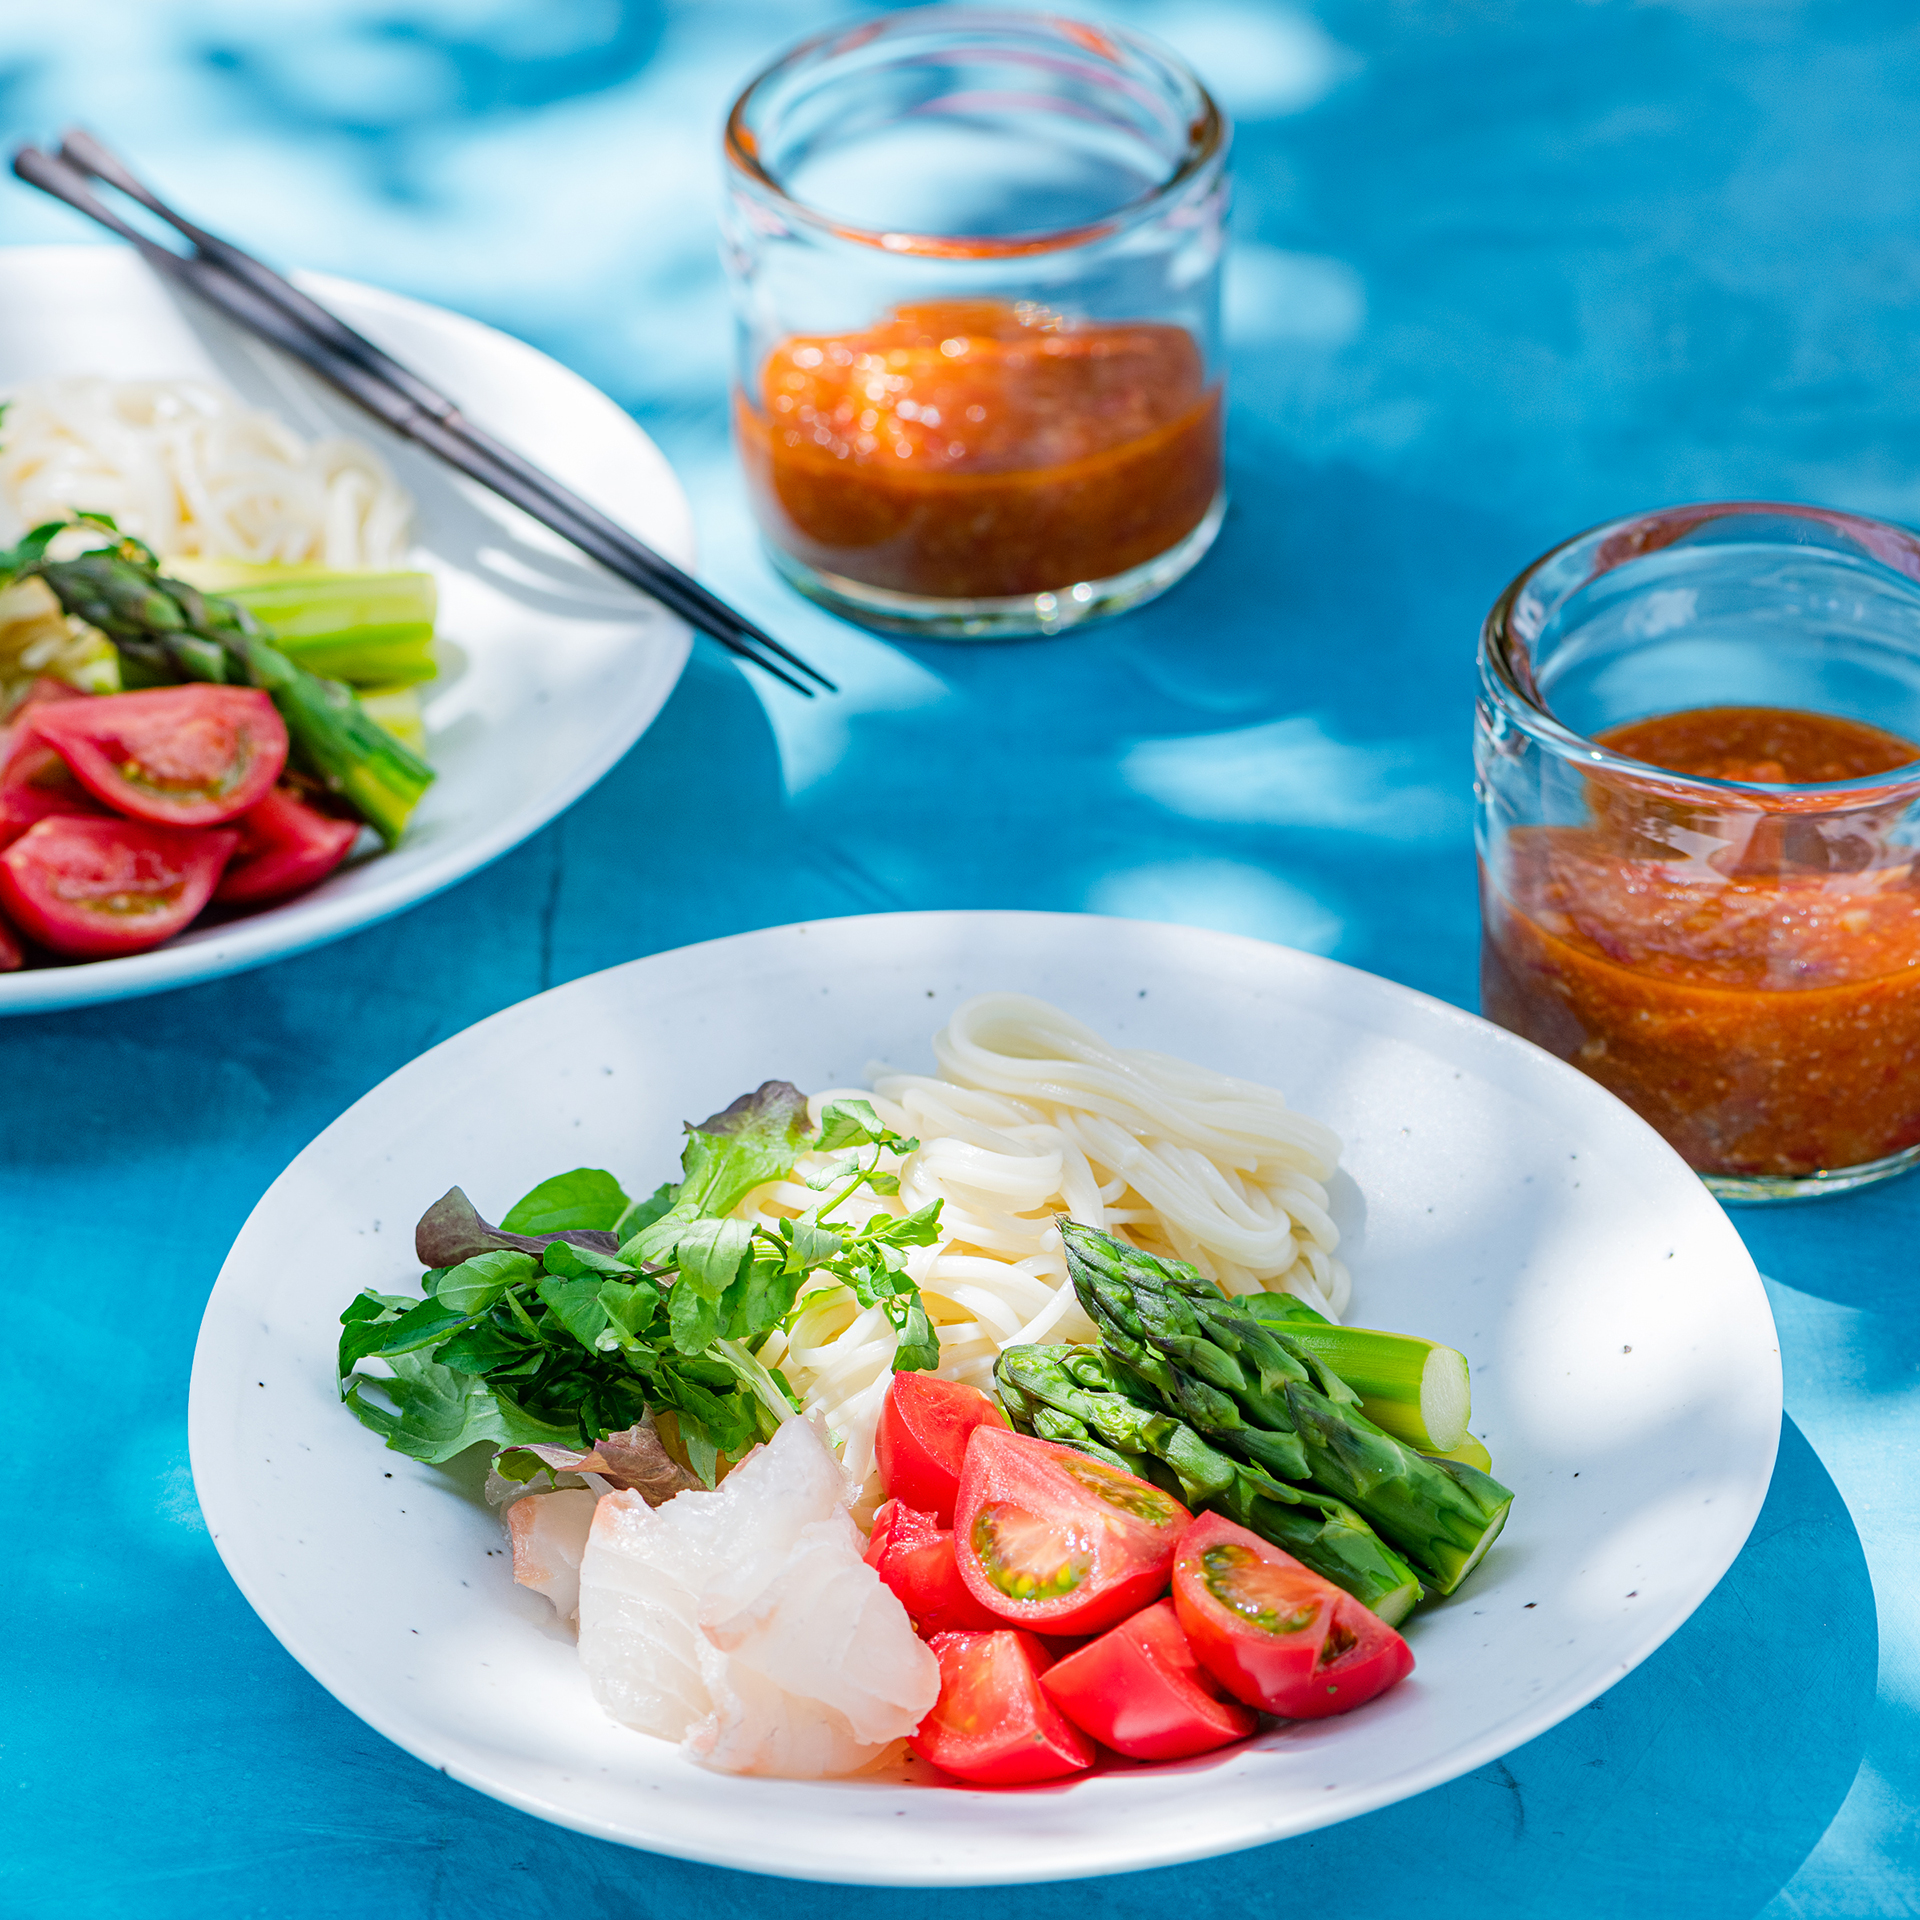 Green Web 赤と緑の元気野菜で 夏の麺料理をおしゃれに Vol トマトとアスパラのサラダつけ麺